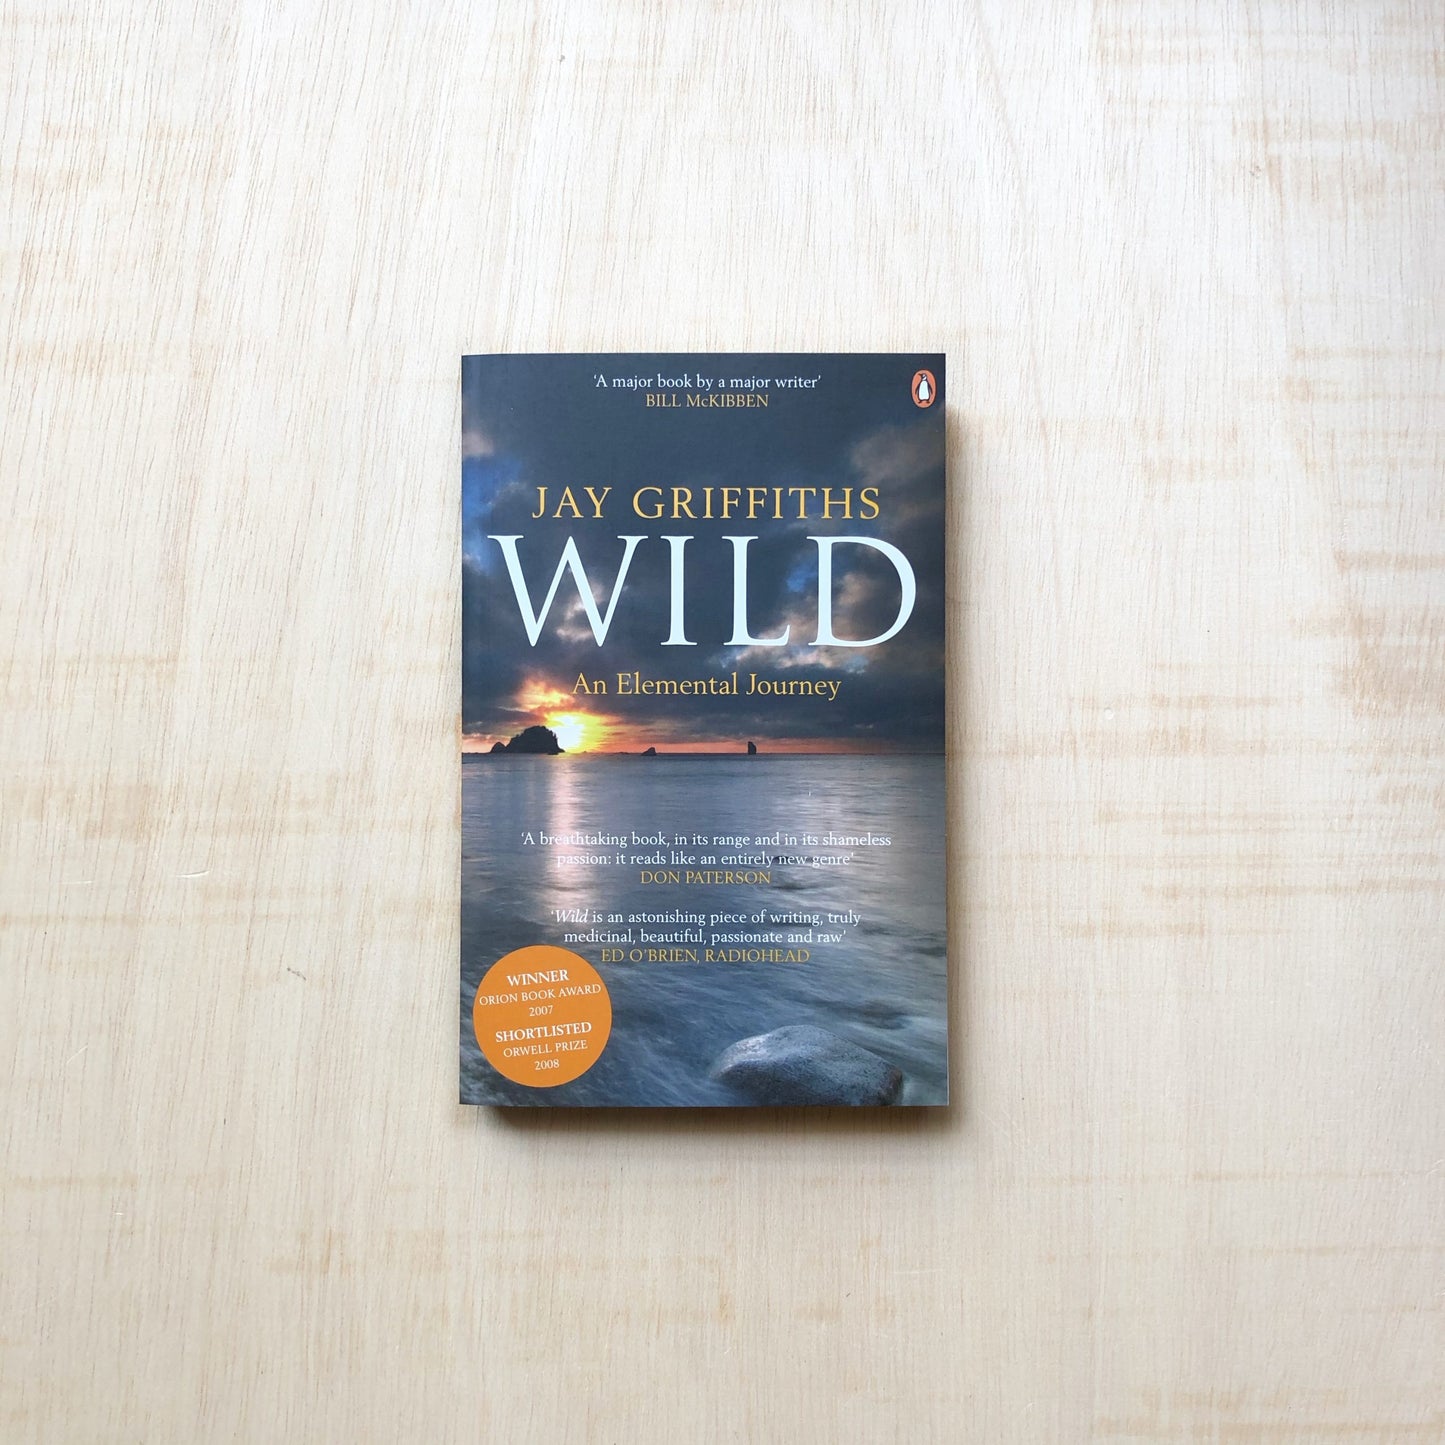 Wild - An Elemental Journey